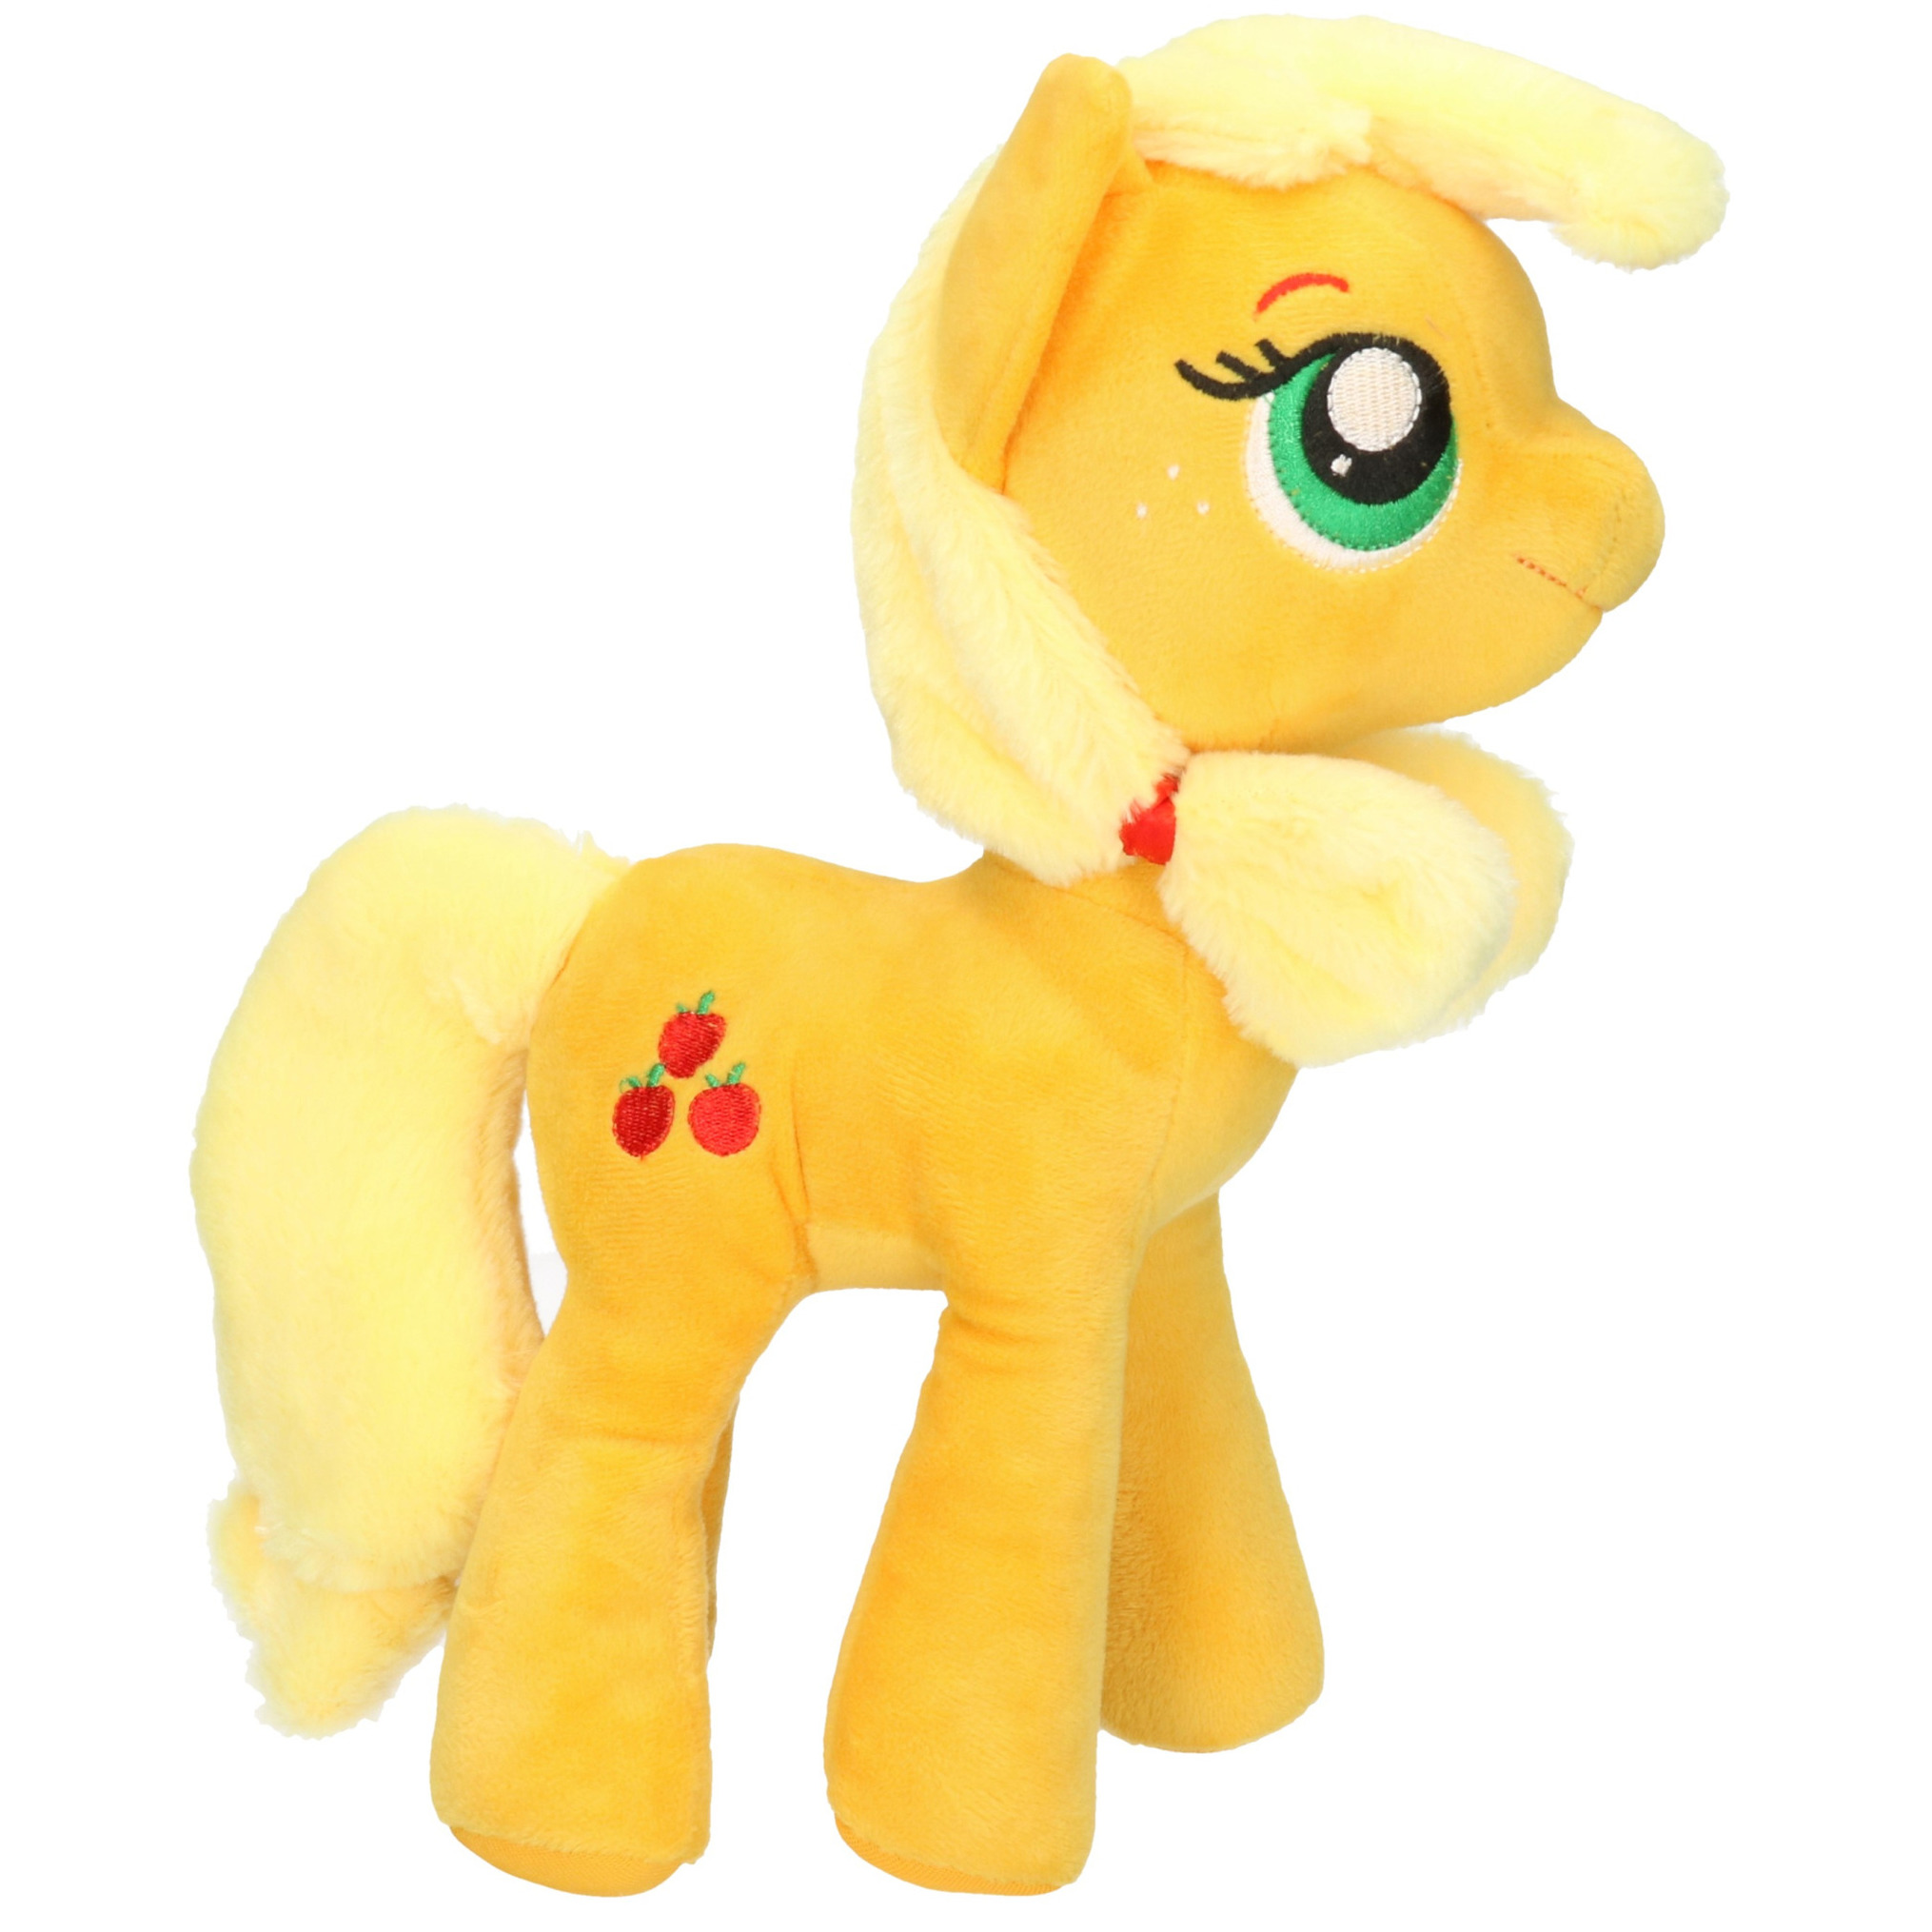 Oranje/gele My Little Pony knuffels Applejack 30 cm knuffeldieren